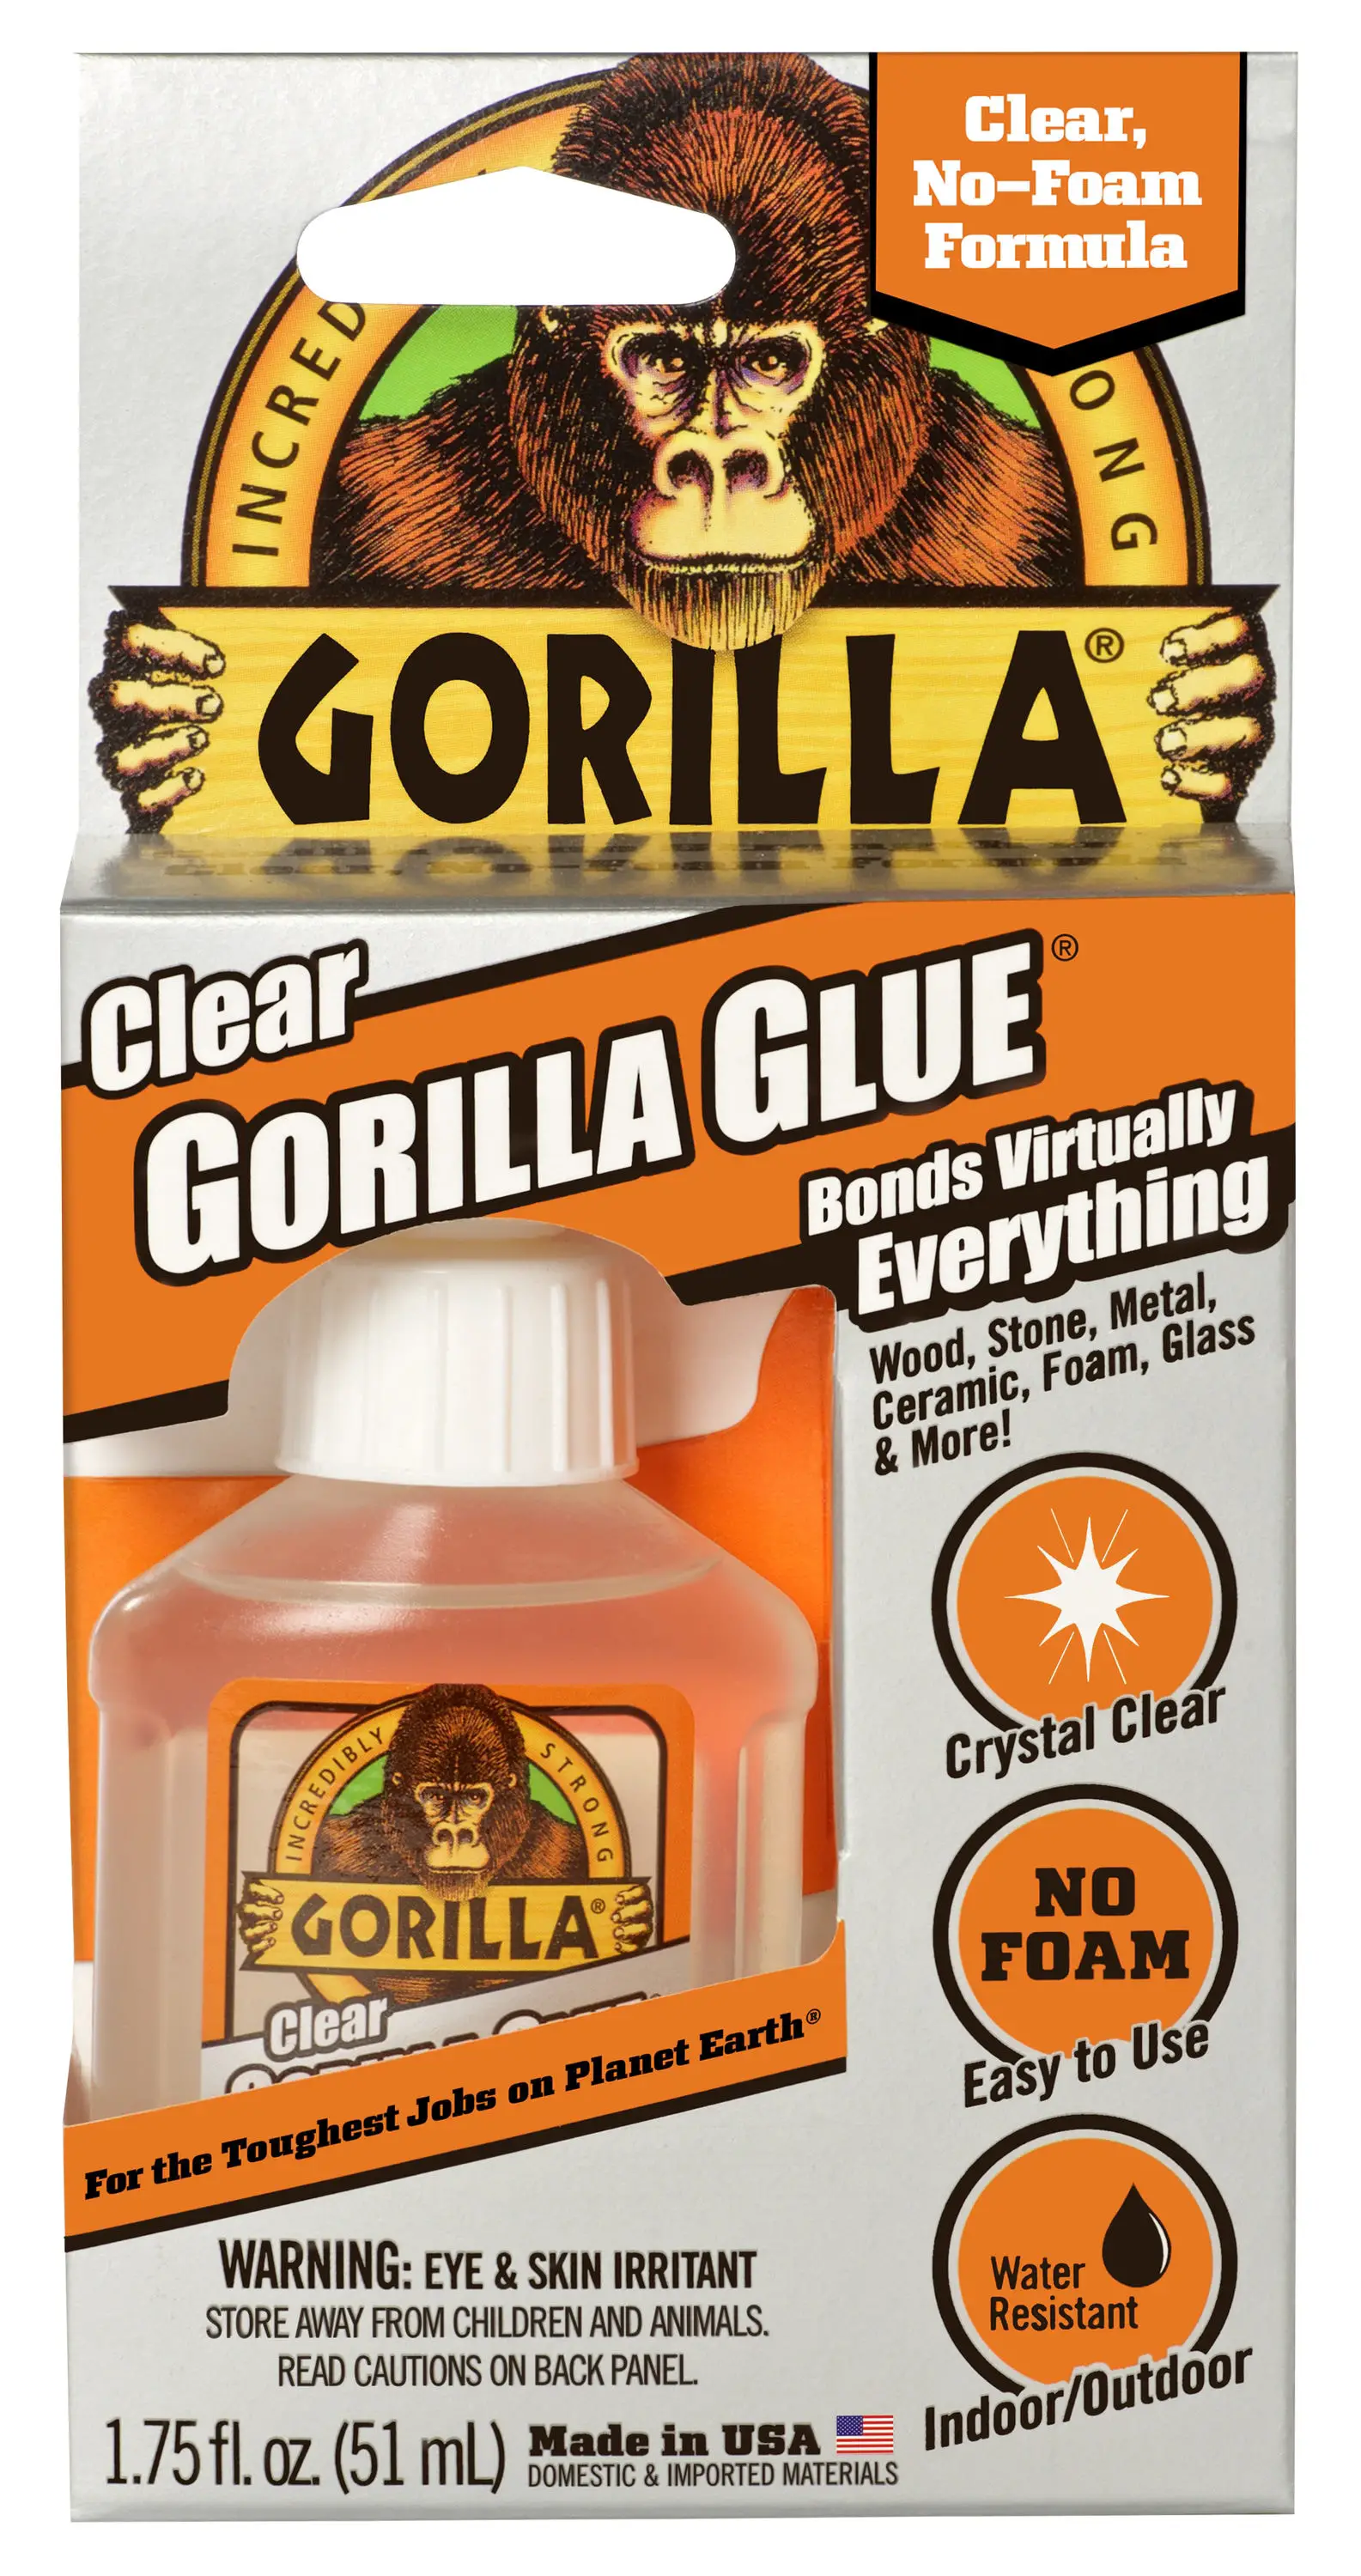 What Is In Gorilla Glue